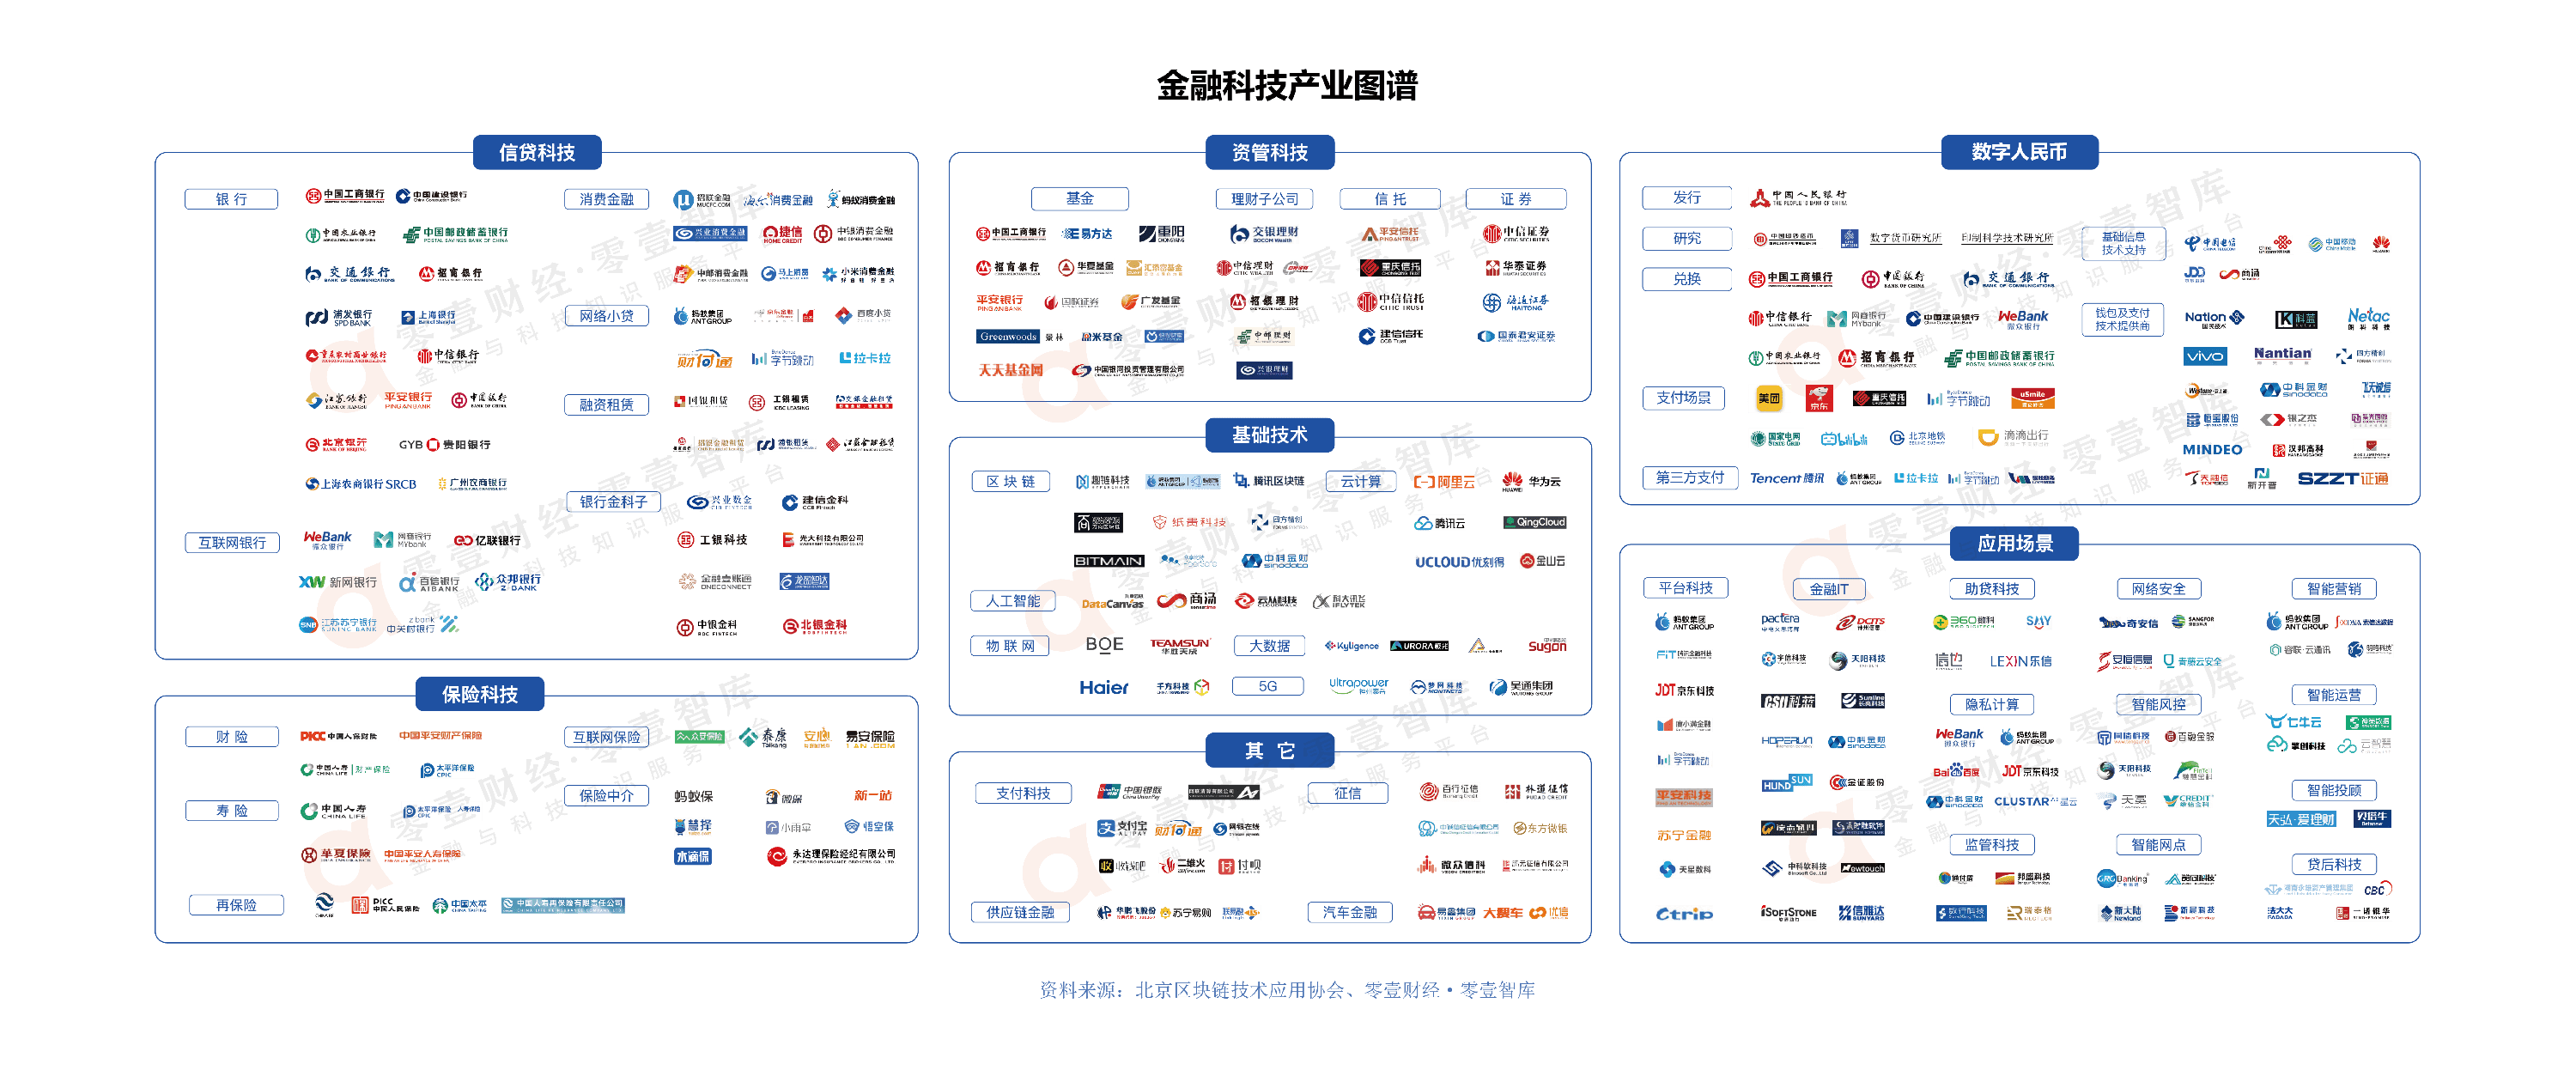 中国金融科技产业图谱2021